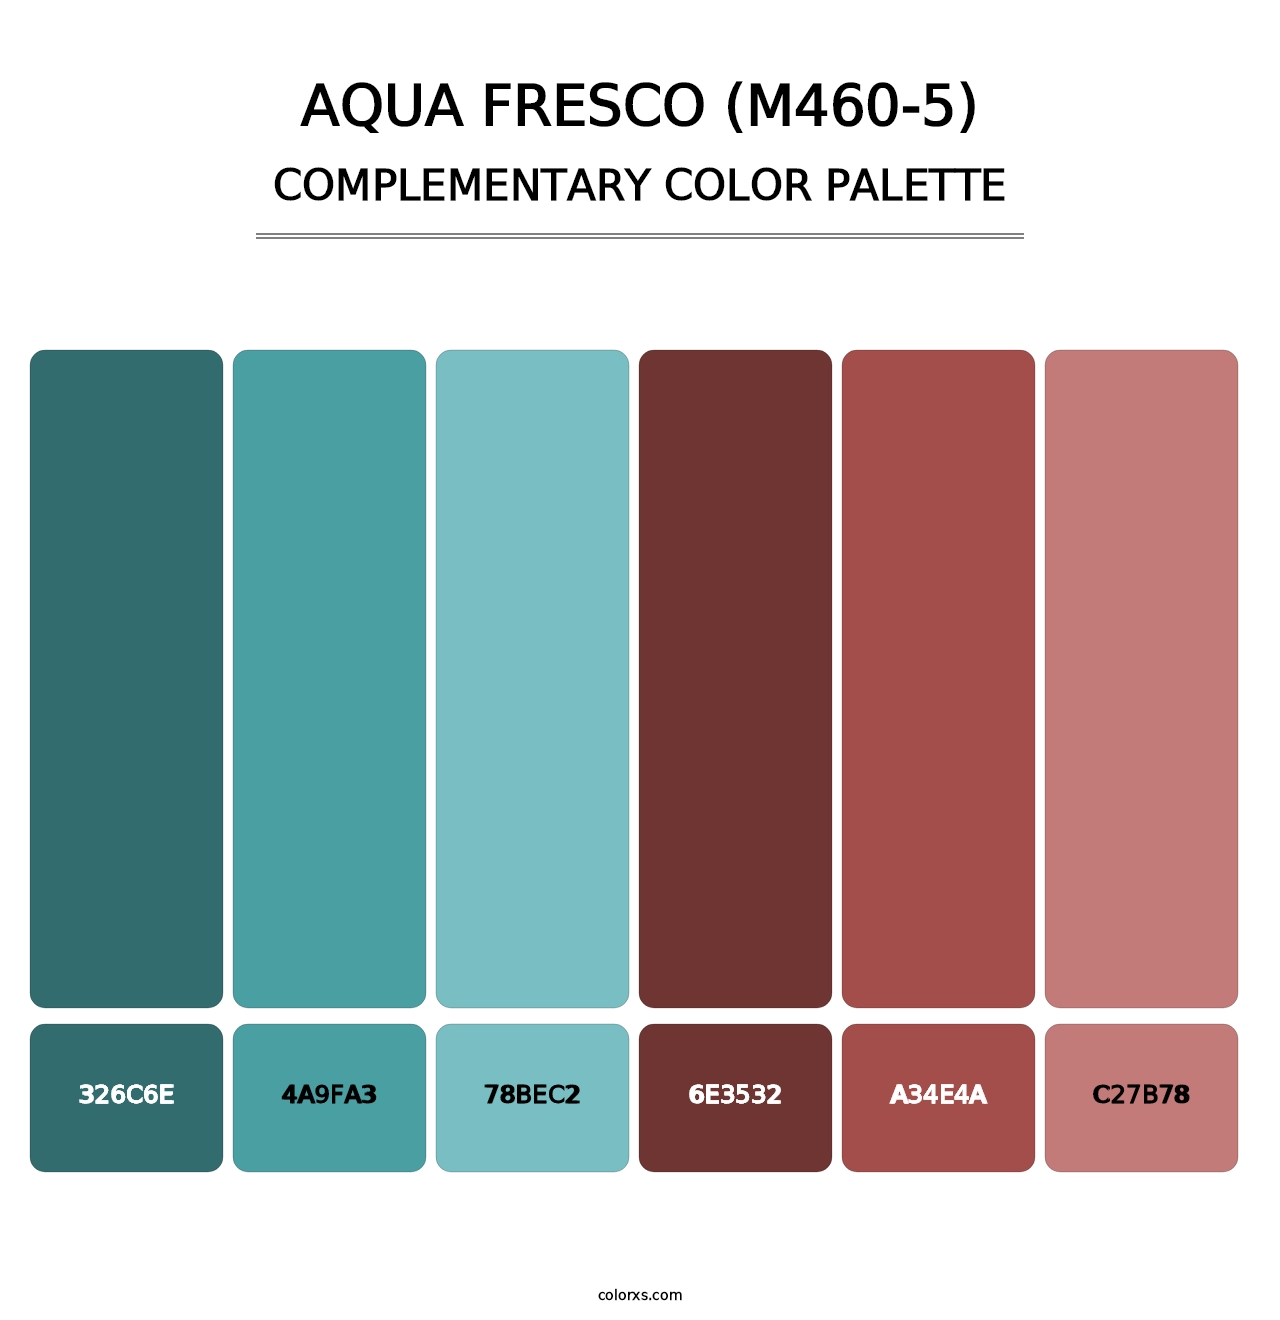 Aqua Fresco (M460-5) - Complementary Color Palette